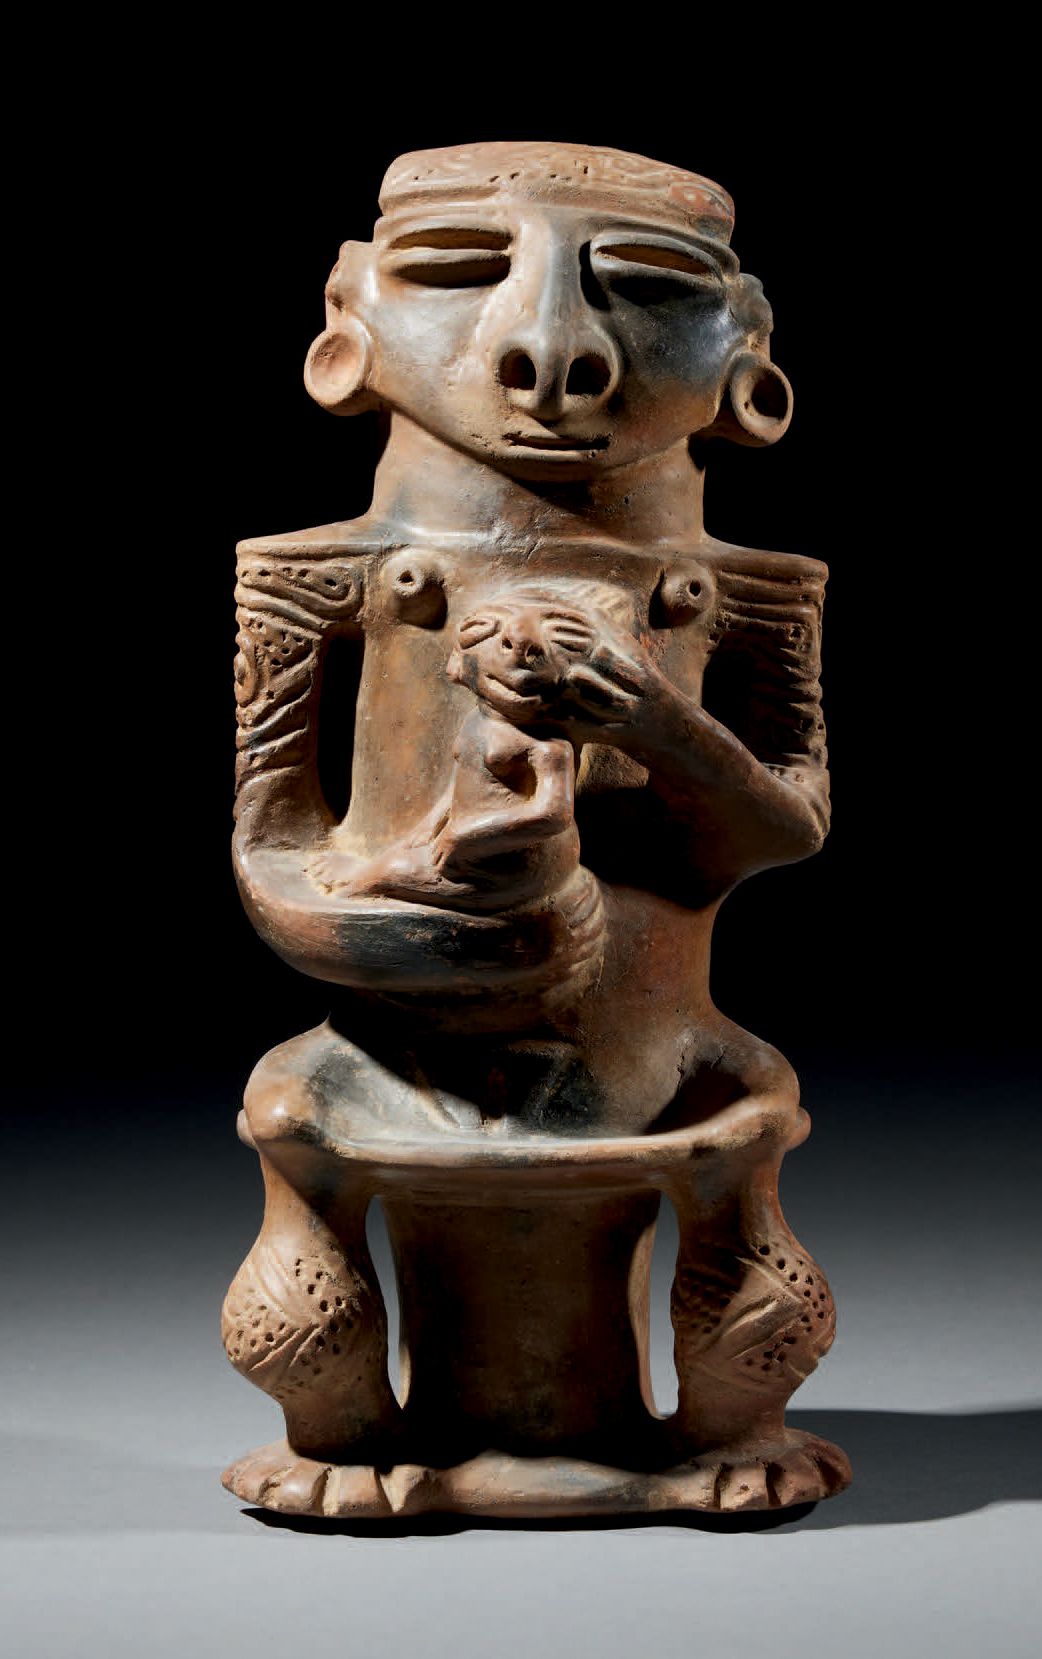 Null Ɵ 坐在长椅上的妇女
手中抱着一个孩子
SINÚ文化，哥伦比亚，公元500-1550年
陶瓷，有深棕色和浅棕色的滑石
高27厘米
出处：
- 美国私人&hellip;